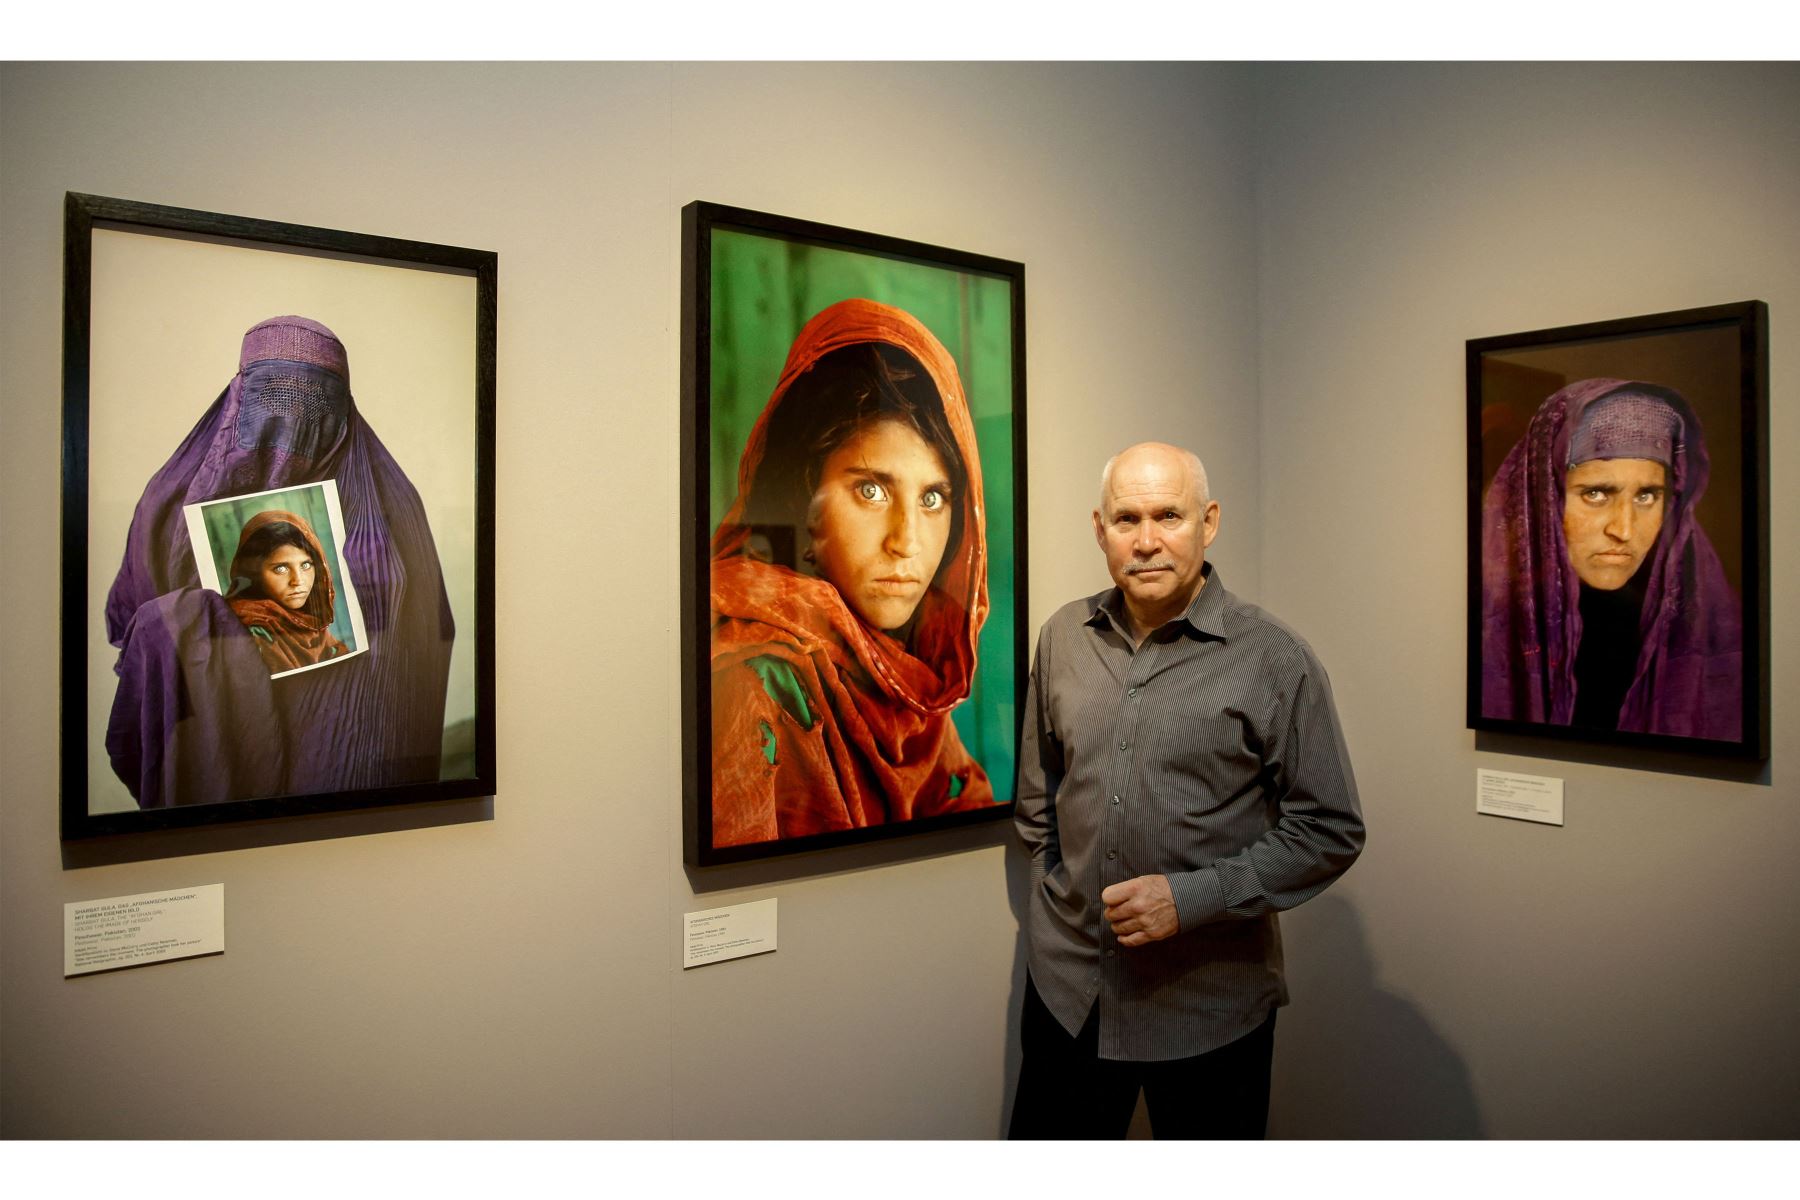 El fotógrafo estadounidense Steve McCurry posa junto a sus fotos de la "niña afgana" llamada Sharbat Gula en la inauguración de la exposición "Abrumados por la vida" de su trabajo en el Museo de Arte y Comercio de Hamburgo, en el norte de Alemania.
Foto: AFP